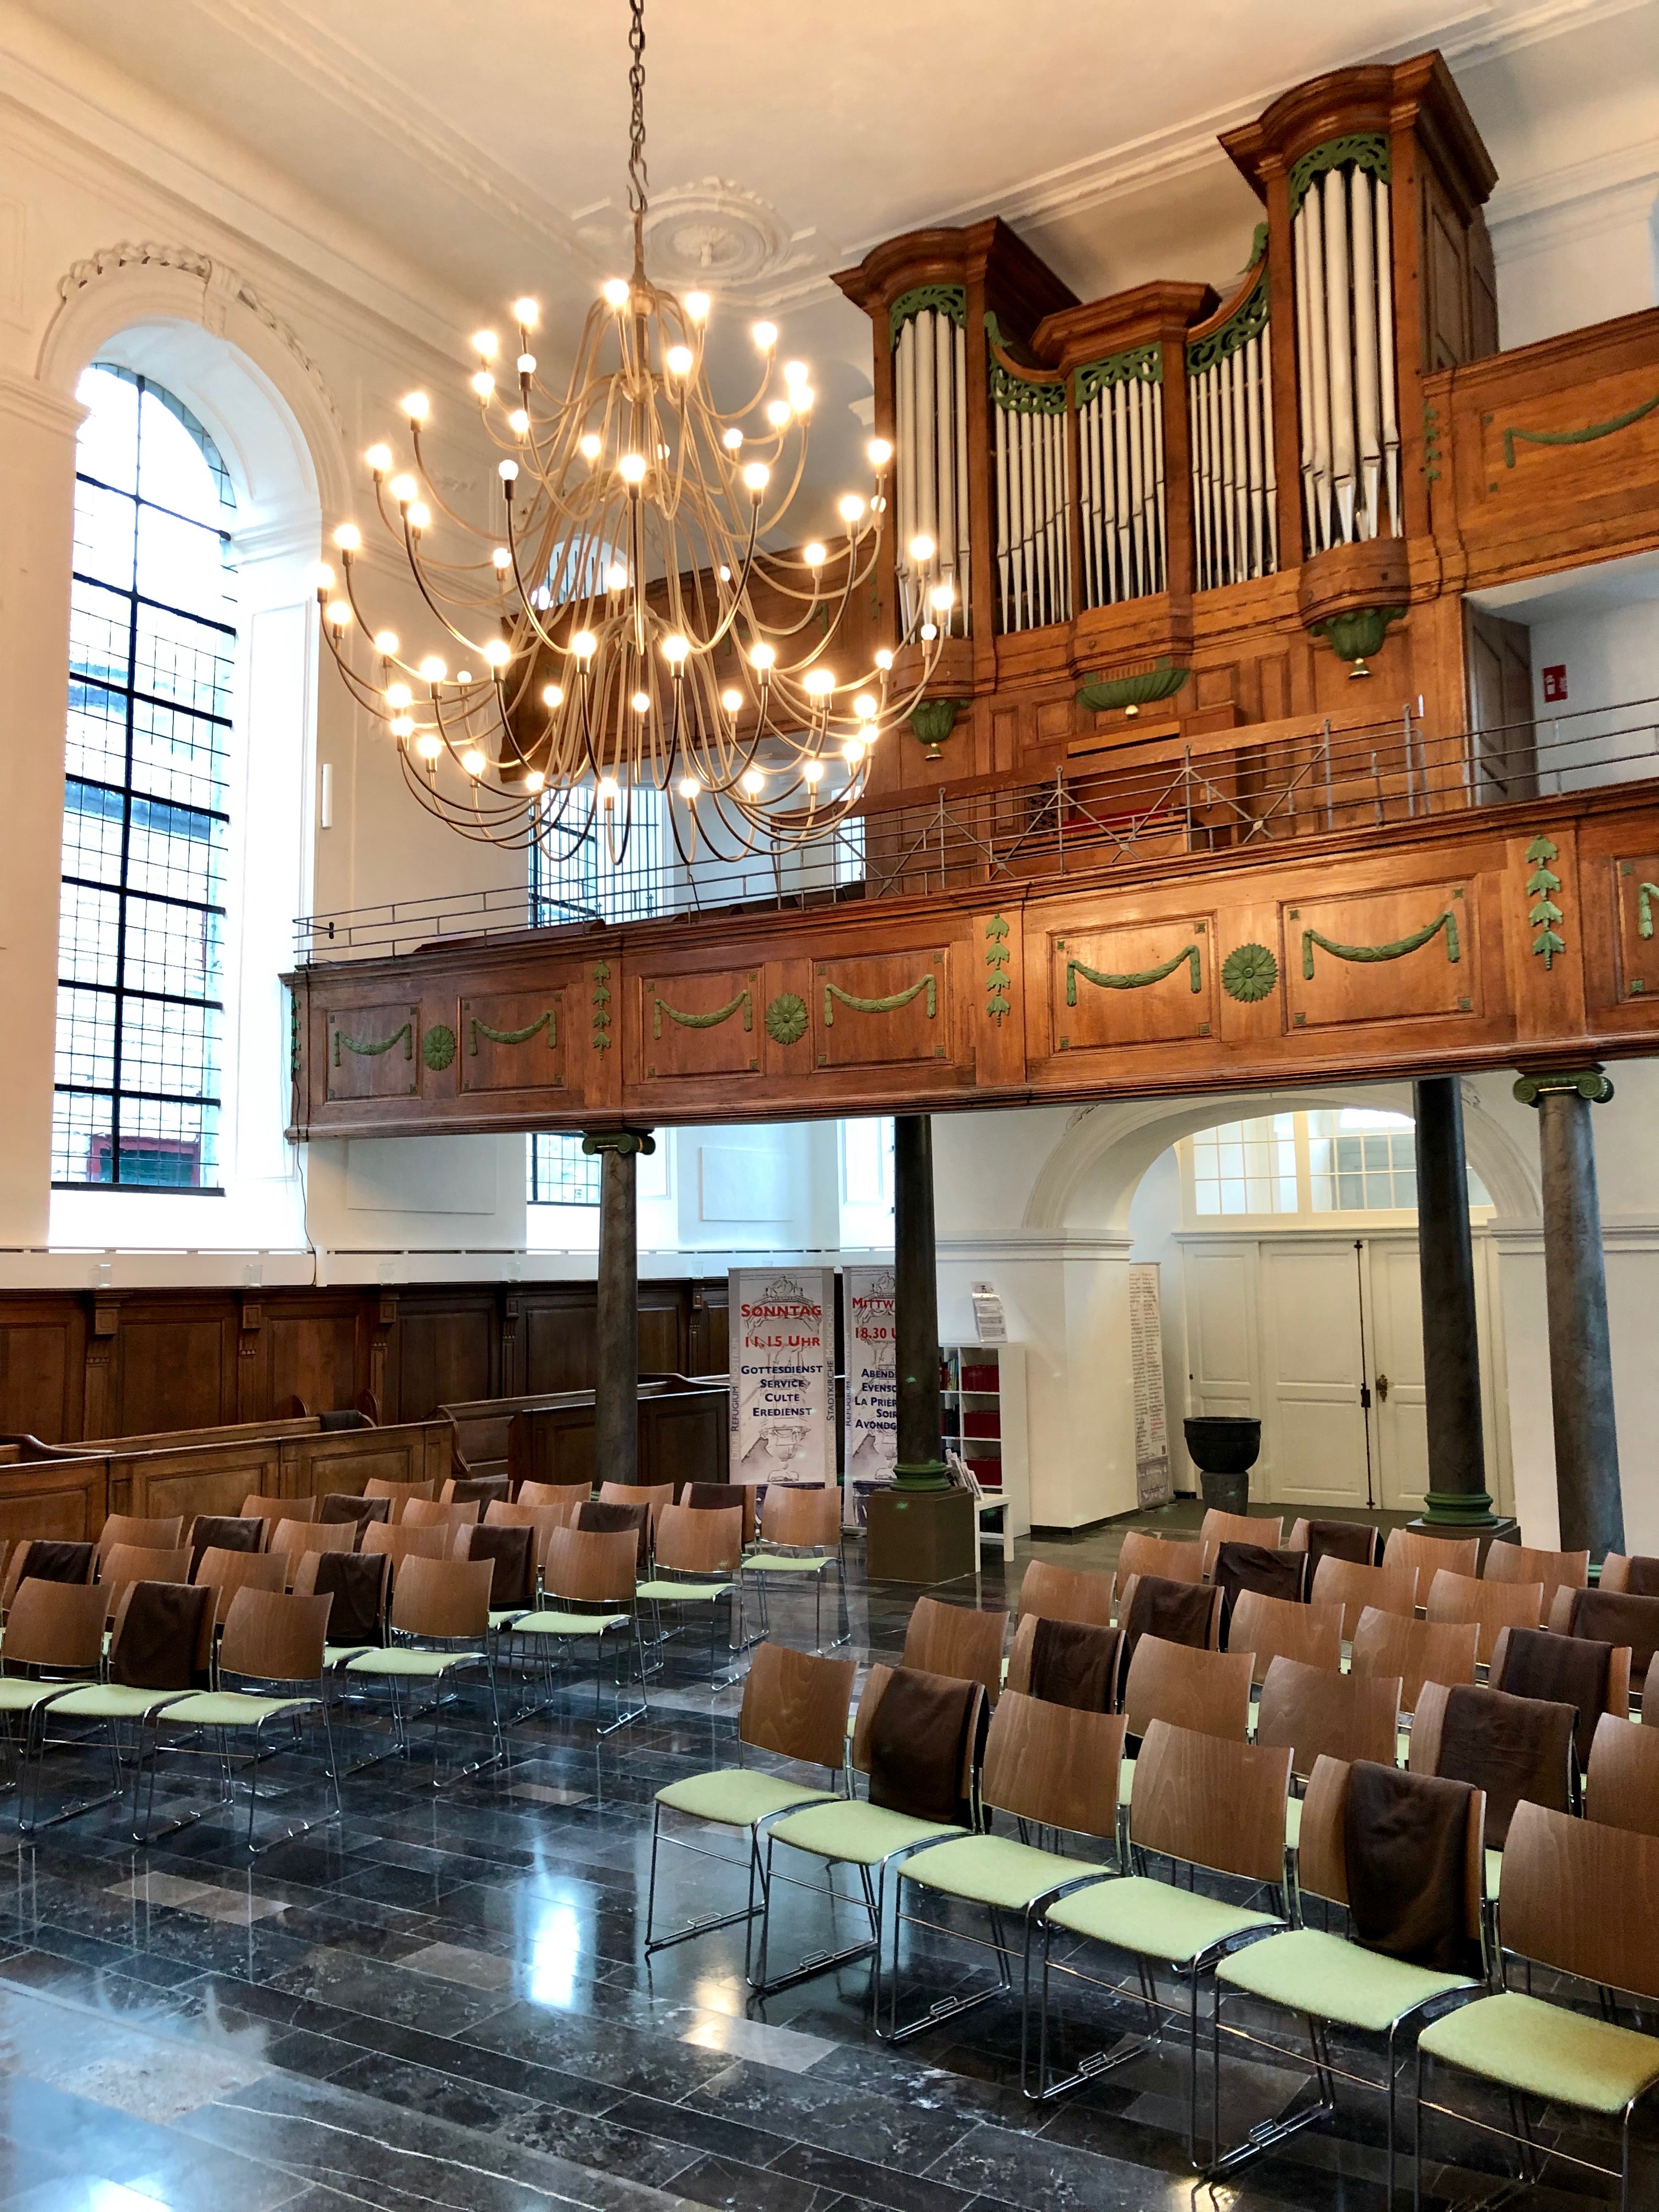 Datei Kircheninnenraum Mit Blick Auf Die Orgel Zustand